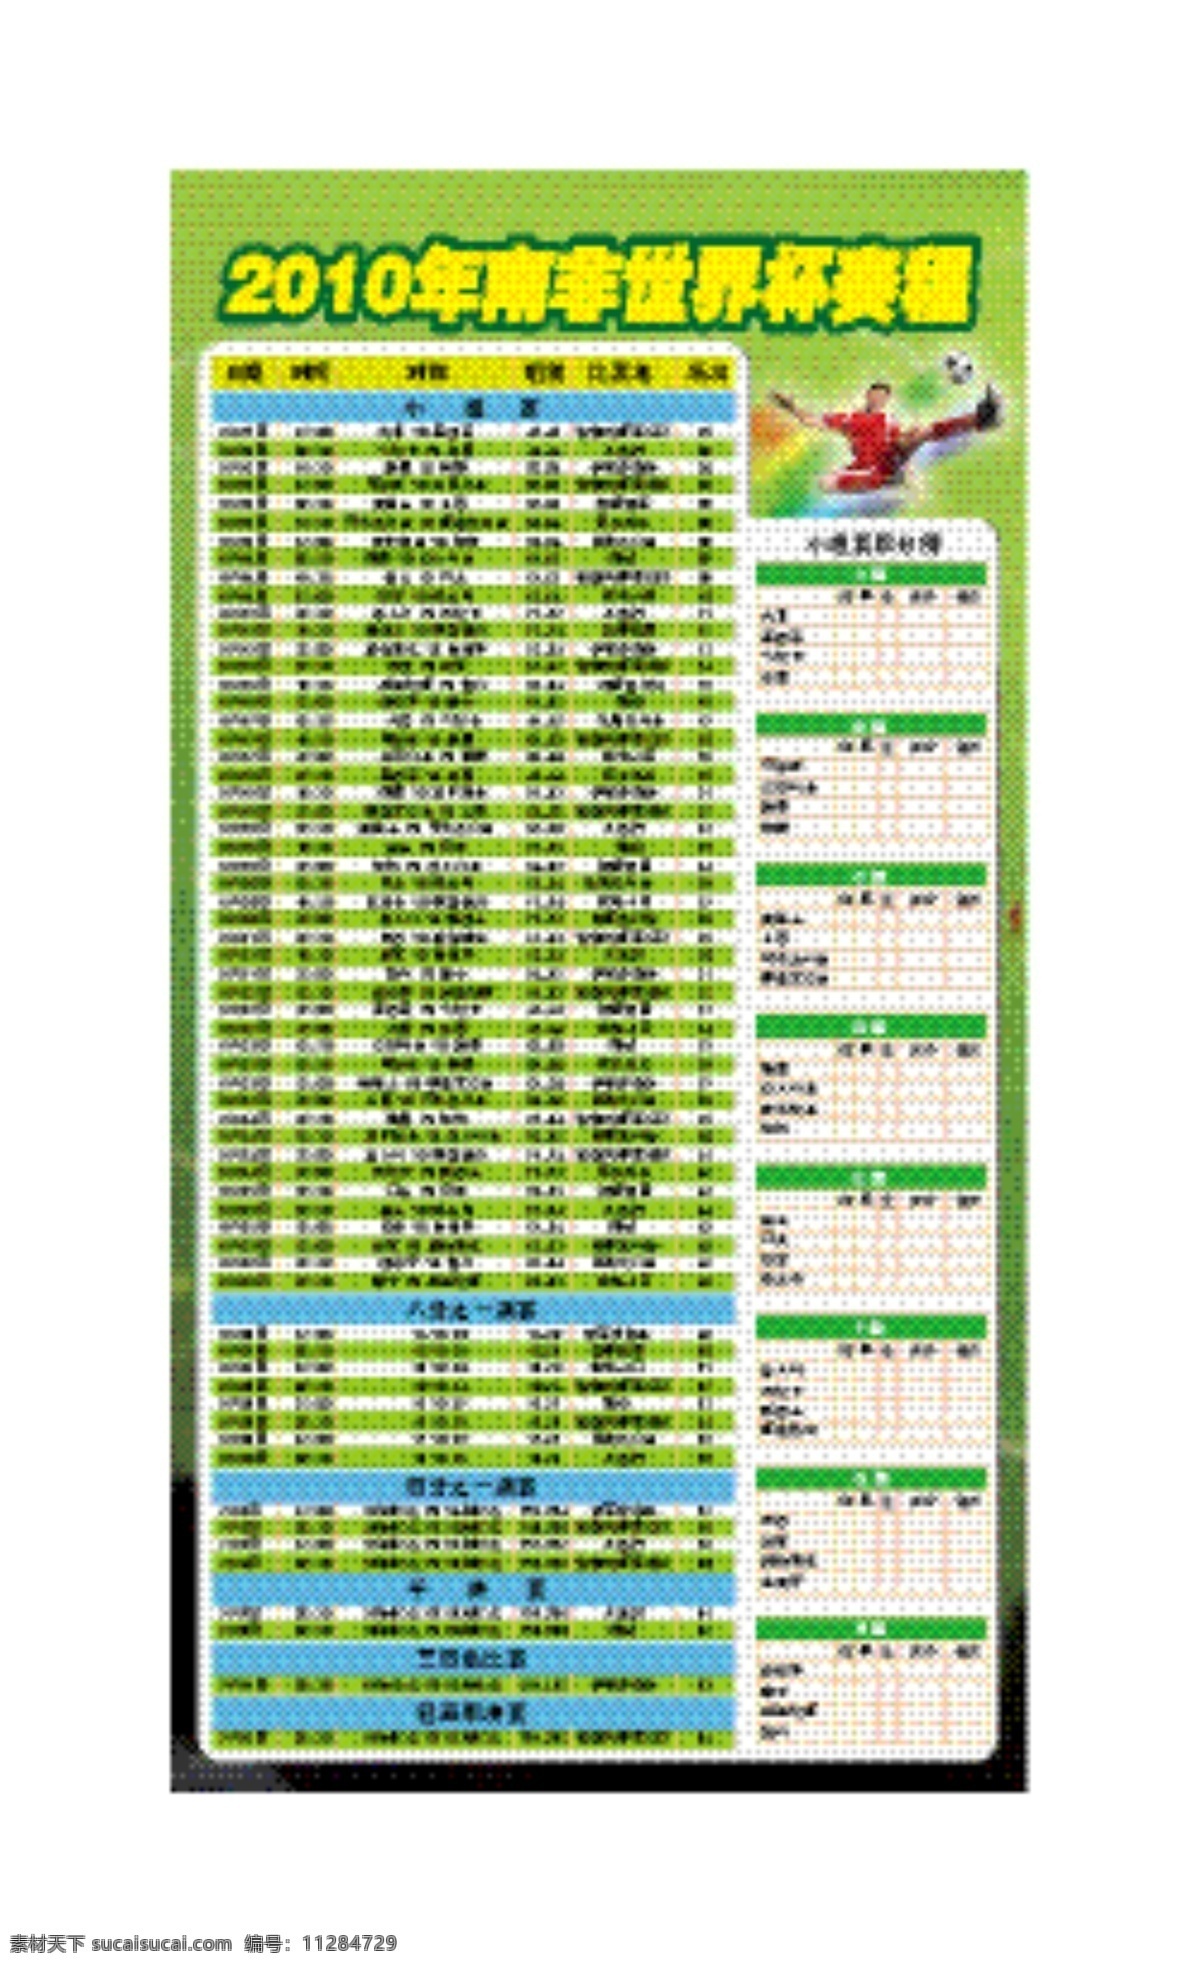 赛程表 生活百科 世界杯 世界杯赛程 休闲娱乐 足球比赛 2010 年 南非 赛程 矢量 模板下载 矢量图 日常生活